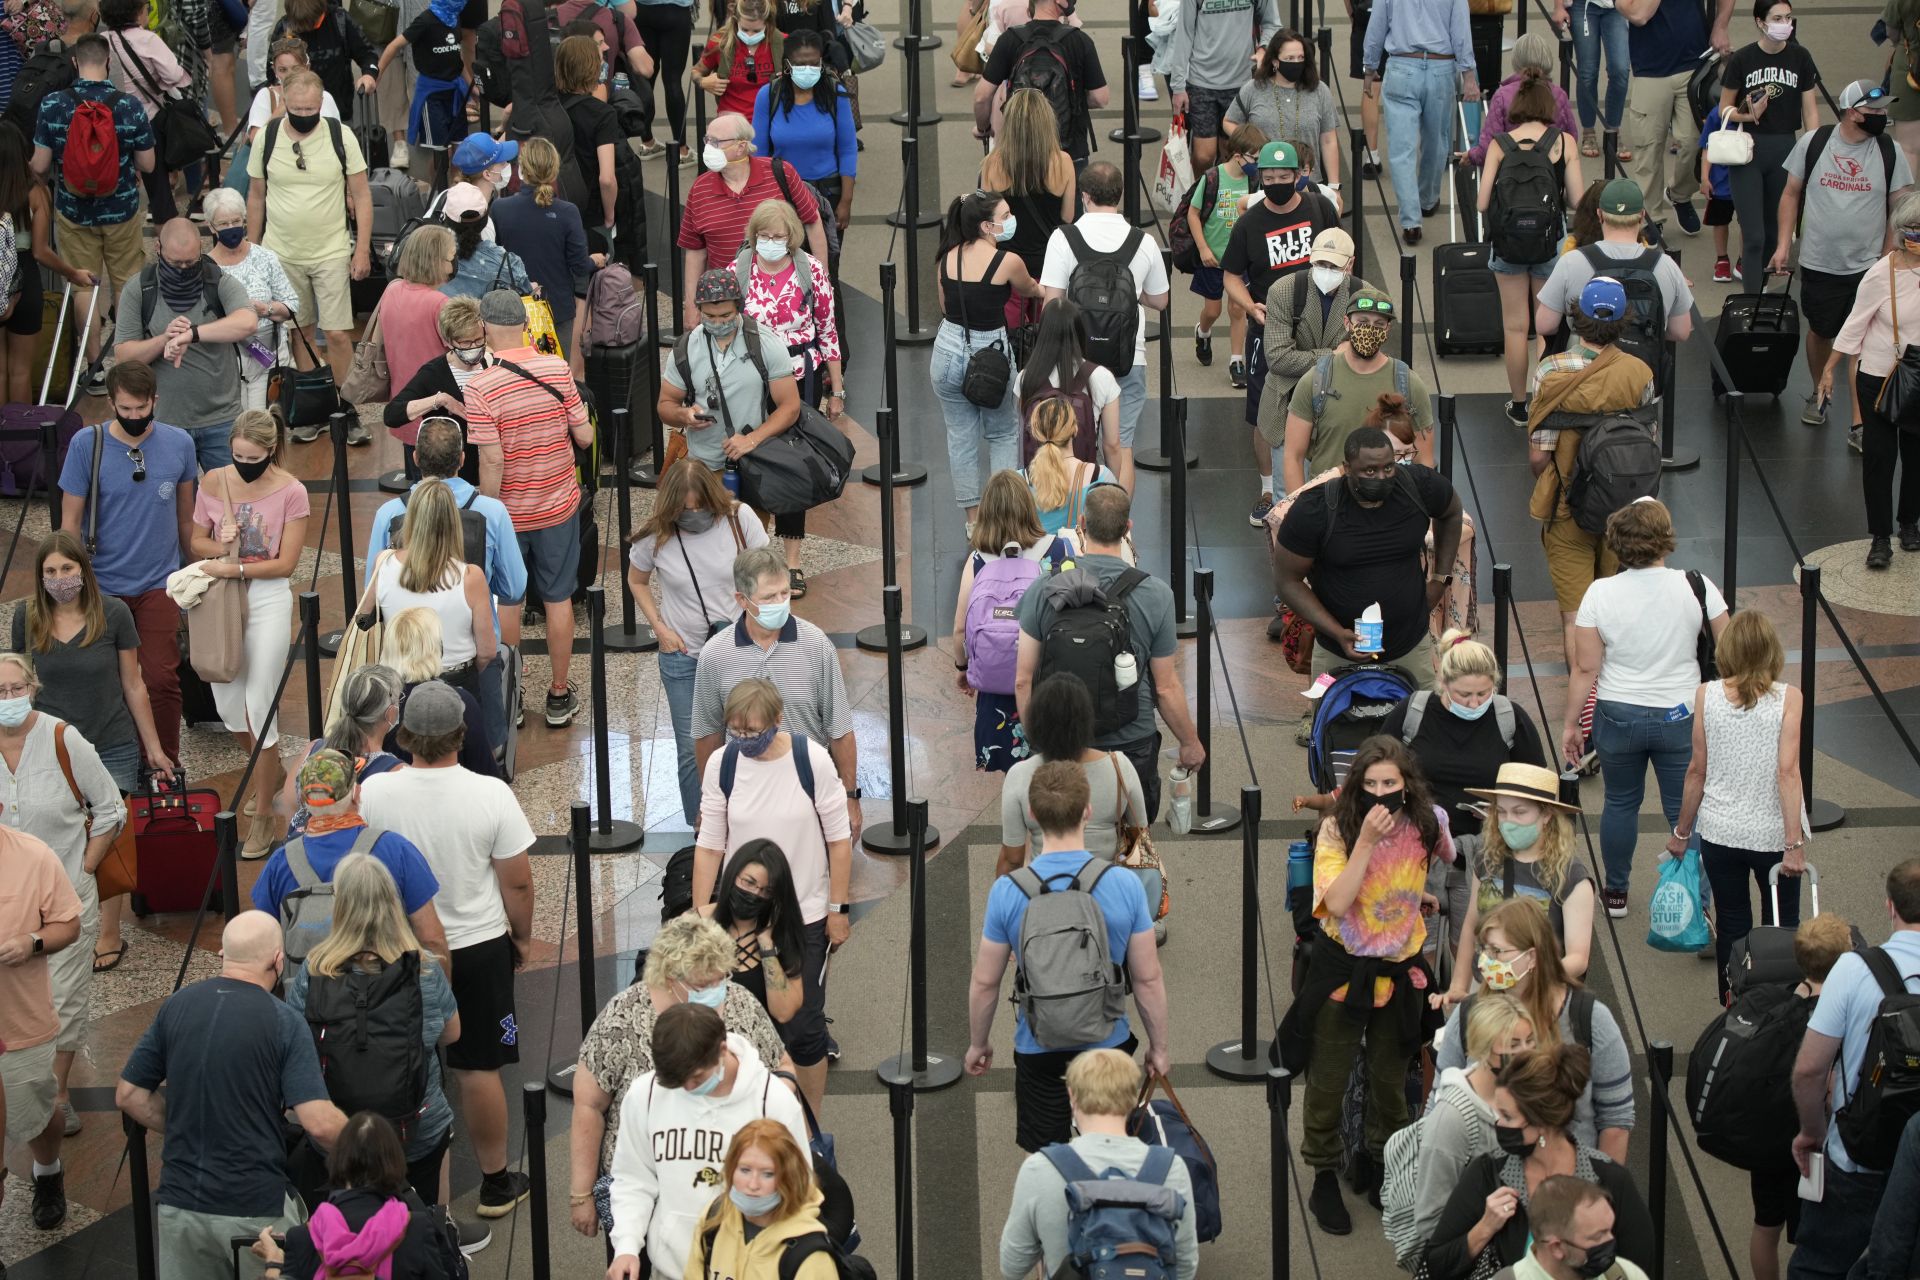  12 юни 2021 година - Денвър, Съединени американски щати - Пътуващи се редят на дълги опашки, с цел да преминат през южния пункт за сигурност на интернационалното летище 